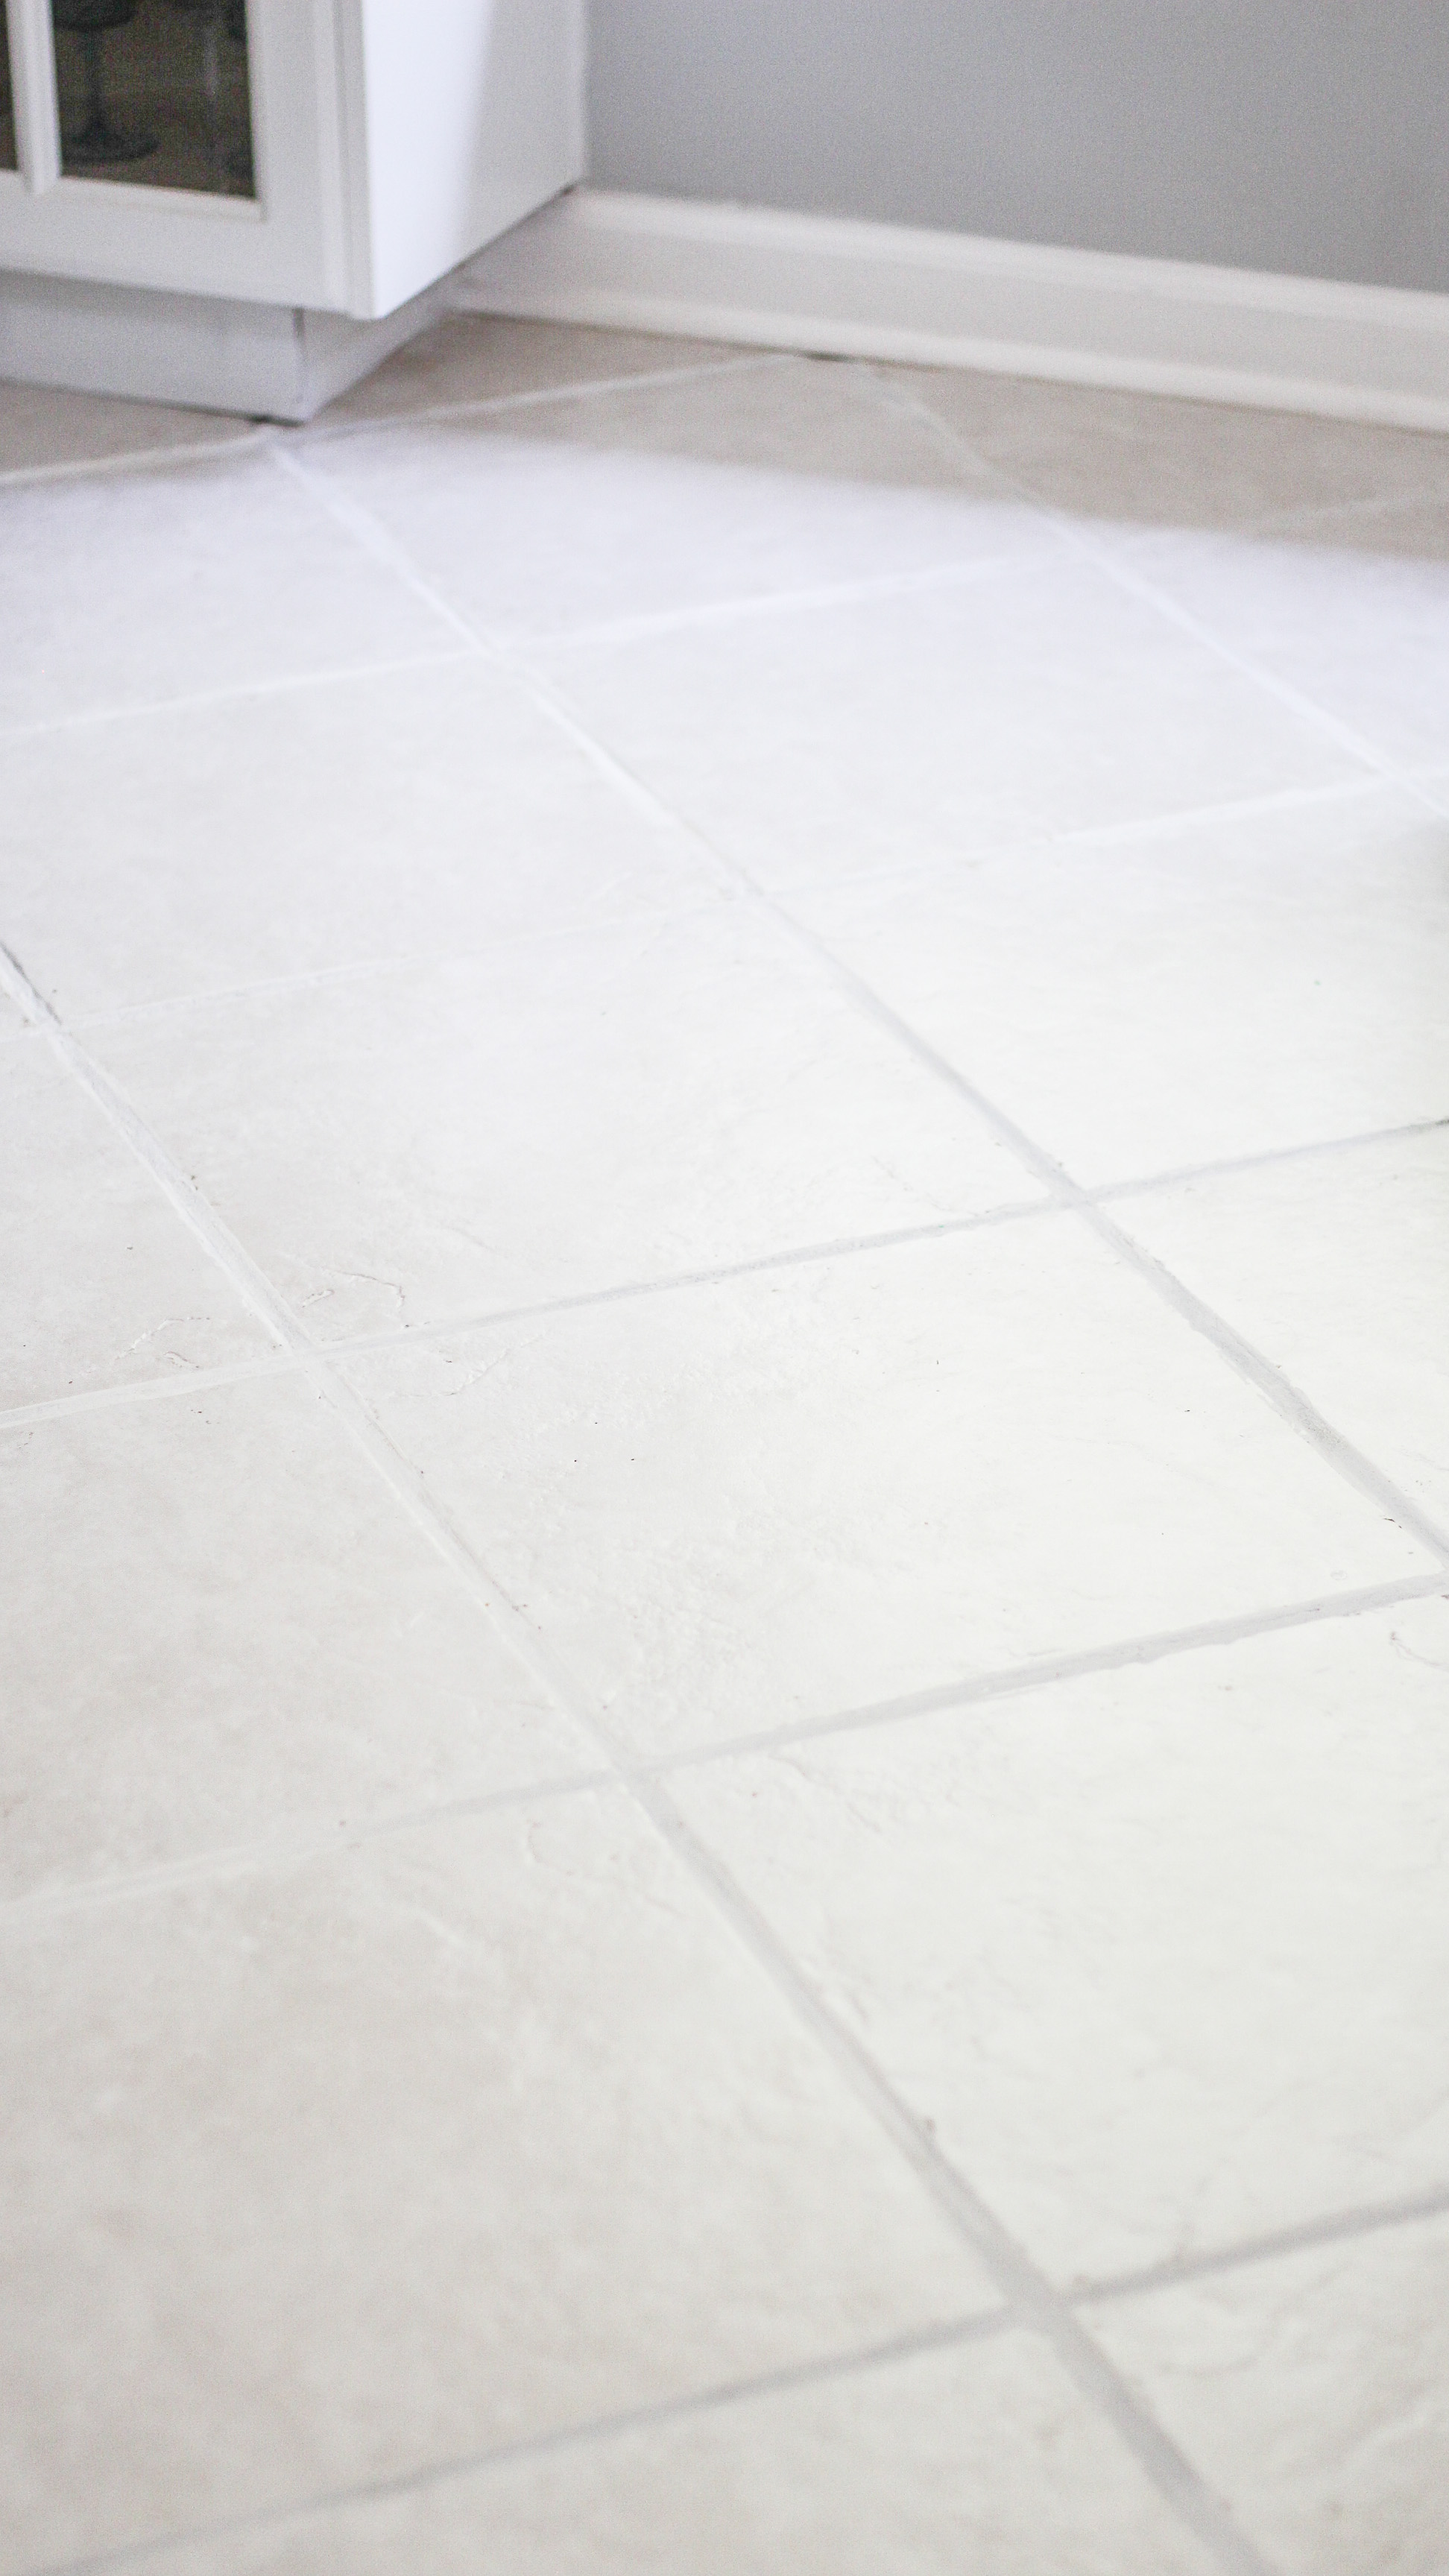 Neglected Tile Flooring, Best Way To Clean Ceramic Floor Tiles